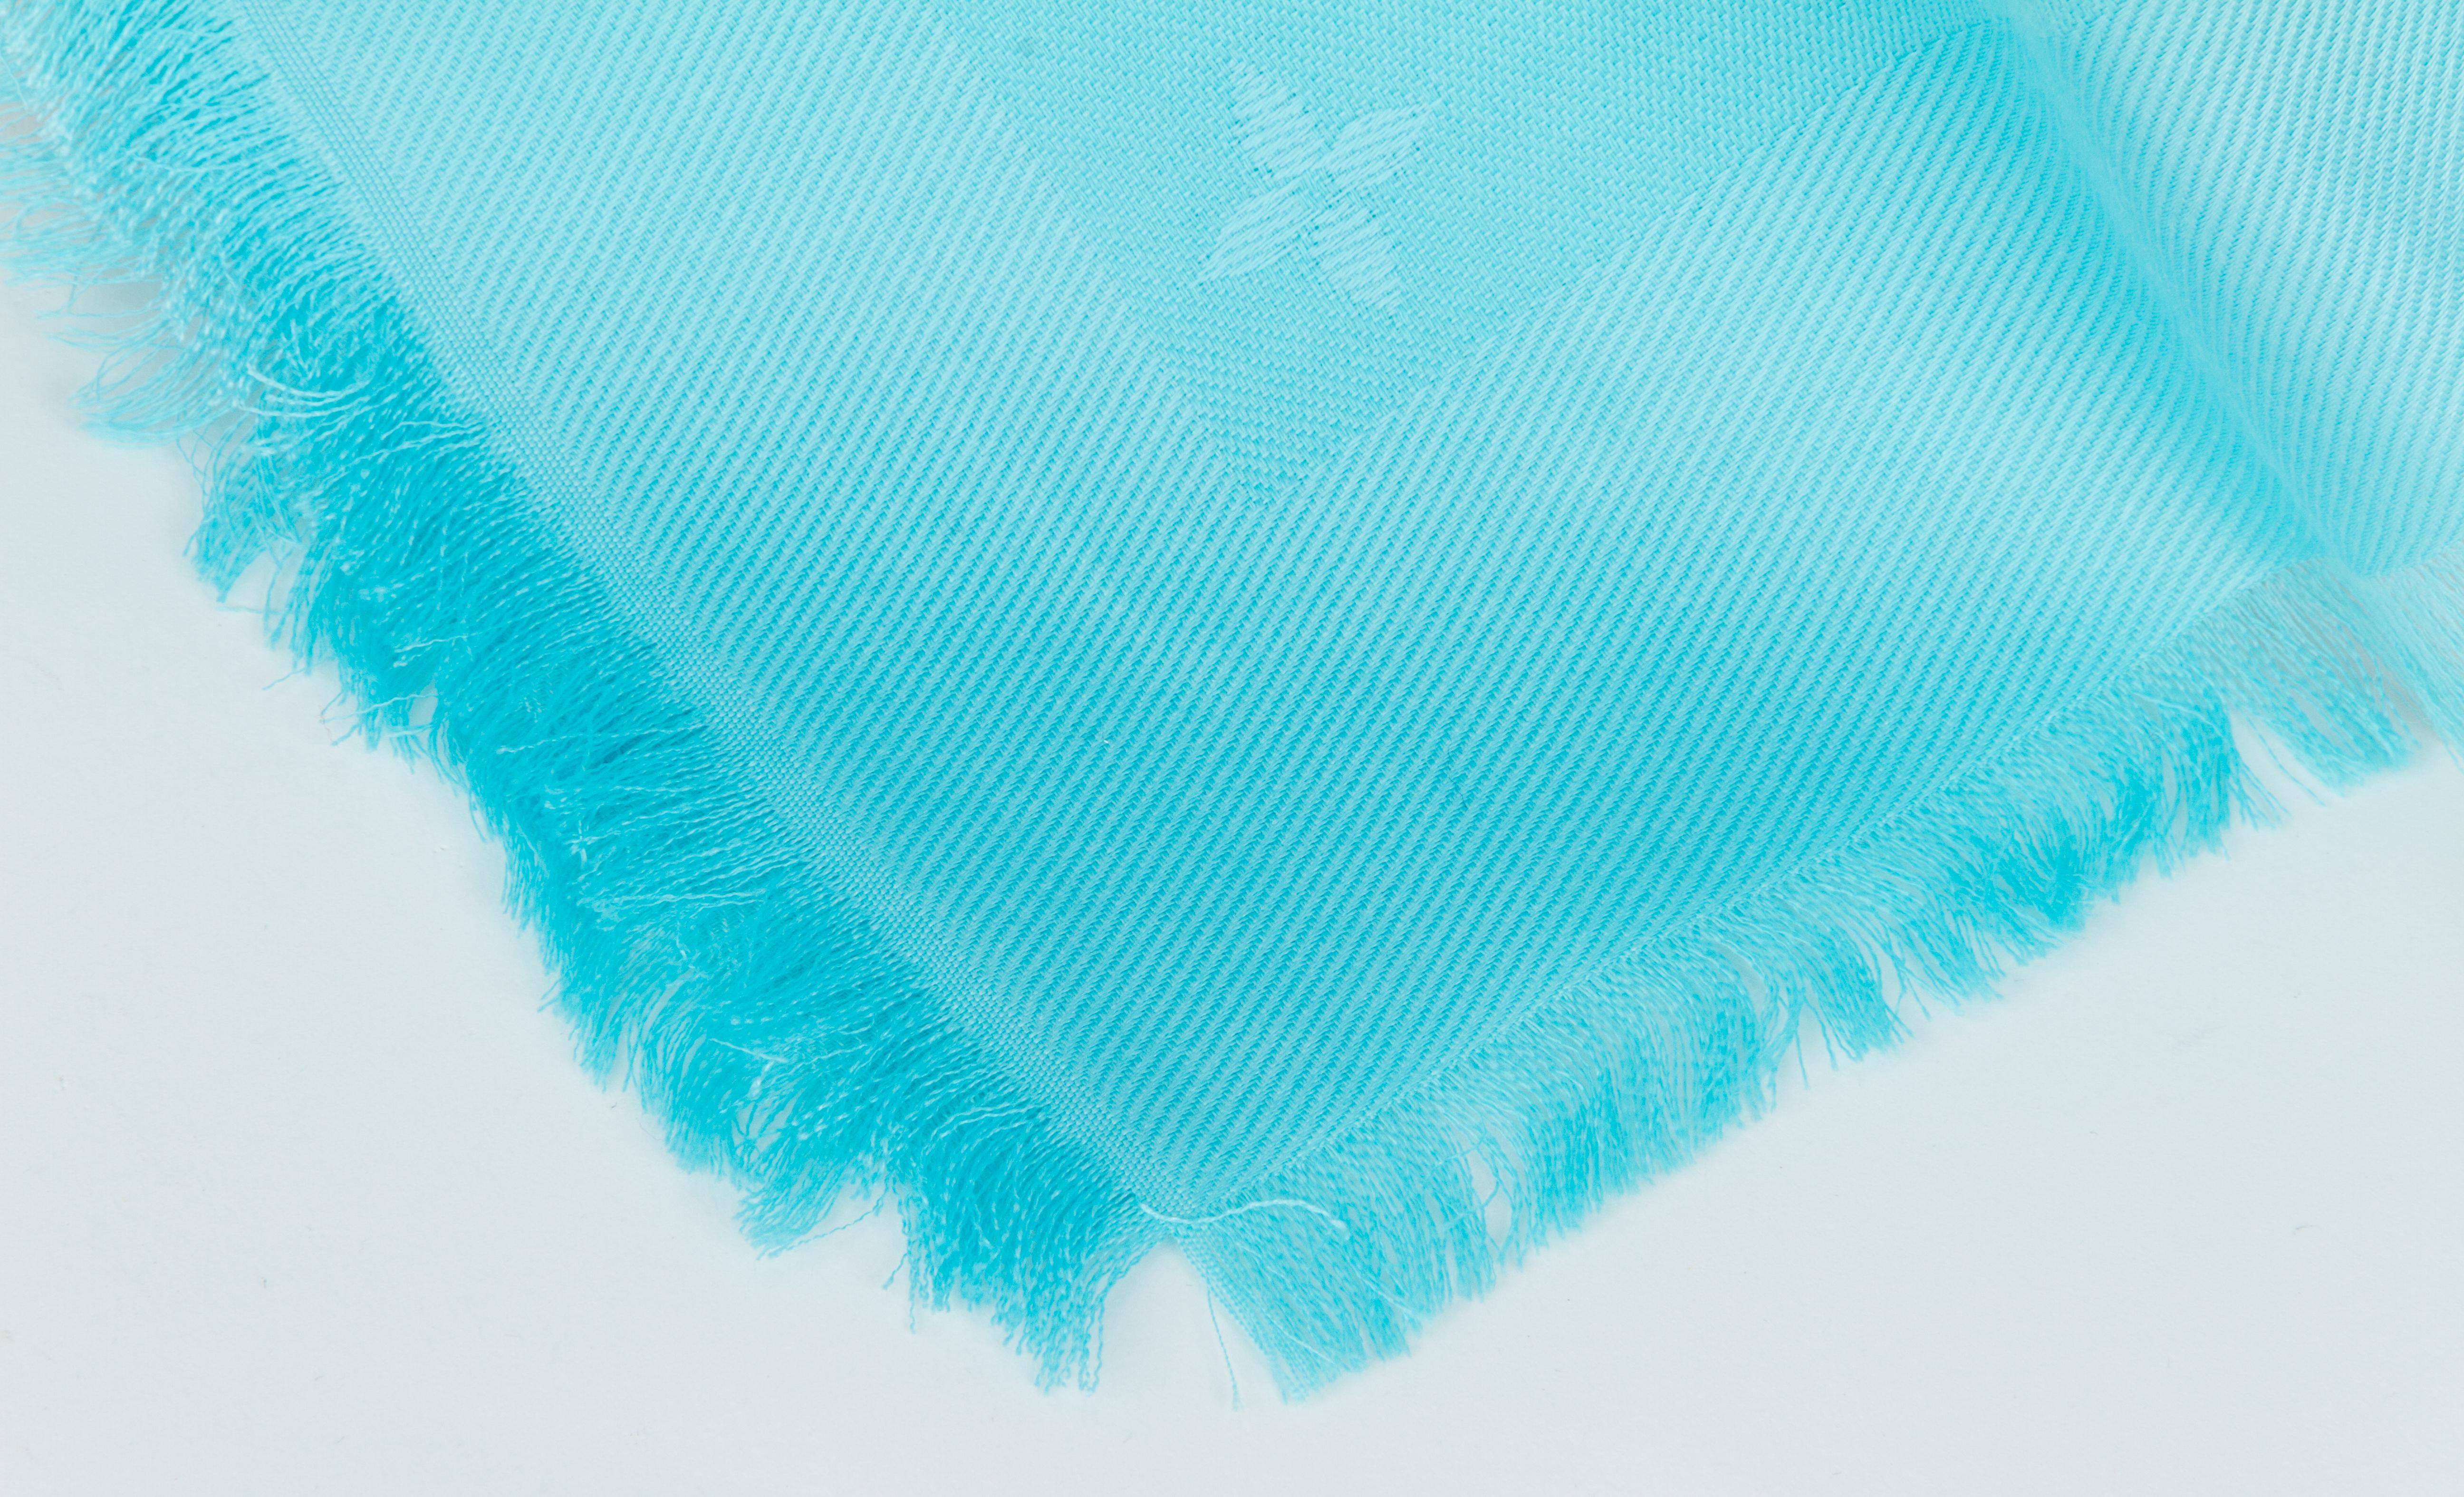 Châle en soie et laine turquoise surdimensionné Louis Vuitton, édition limitée, avec motifs de ballons de basket et logos. Tissage jacquard. Finition en frange.